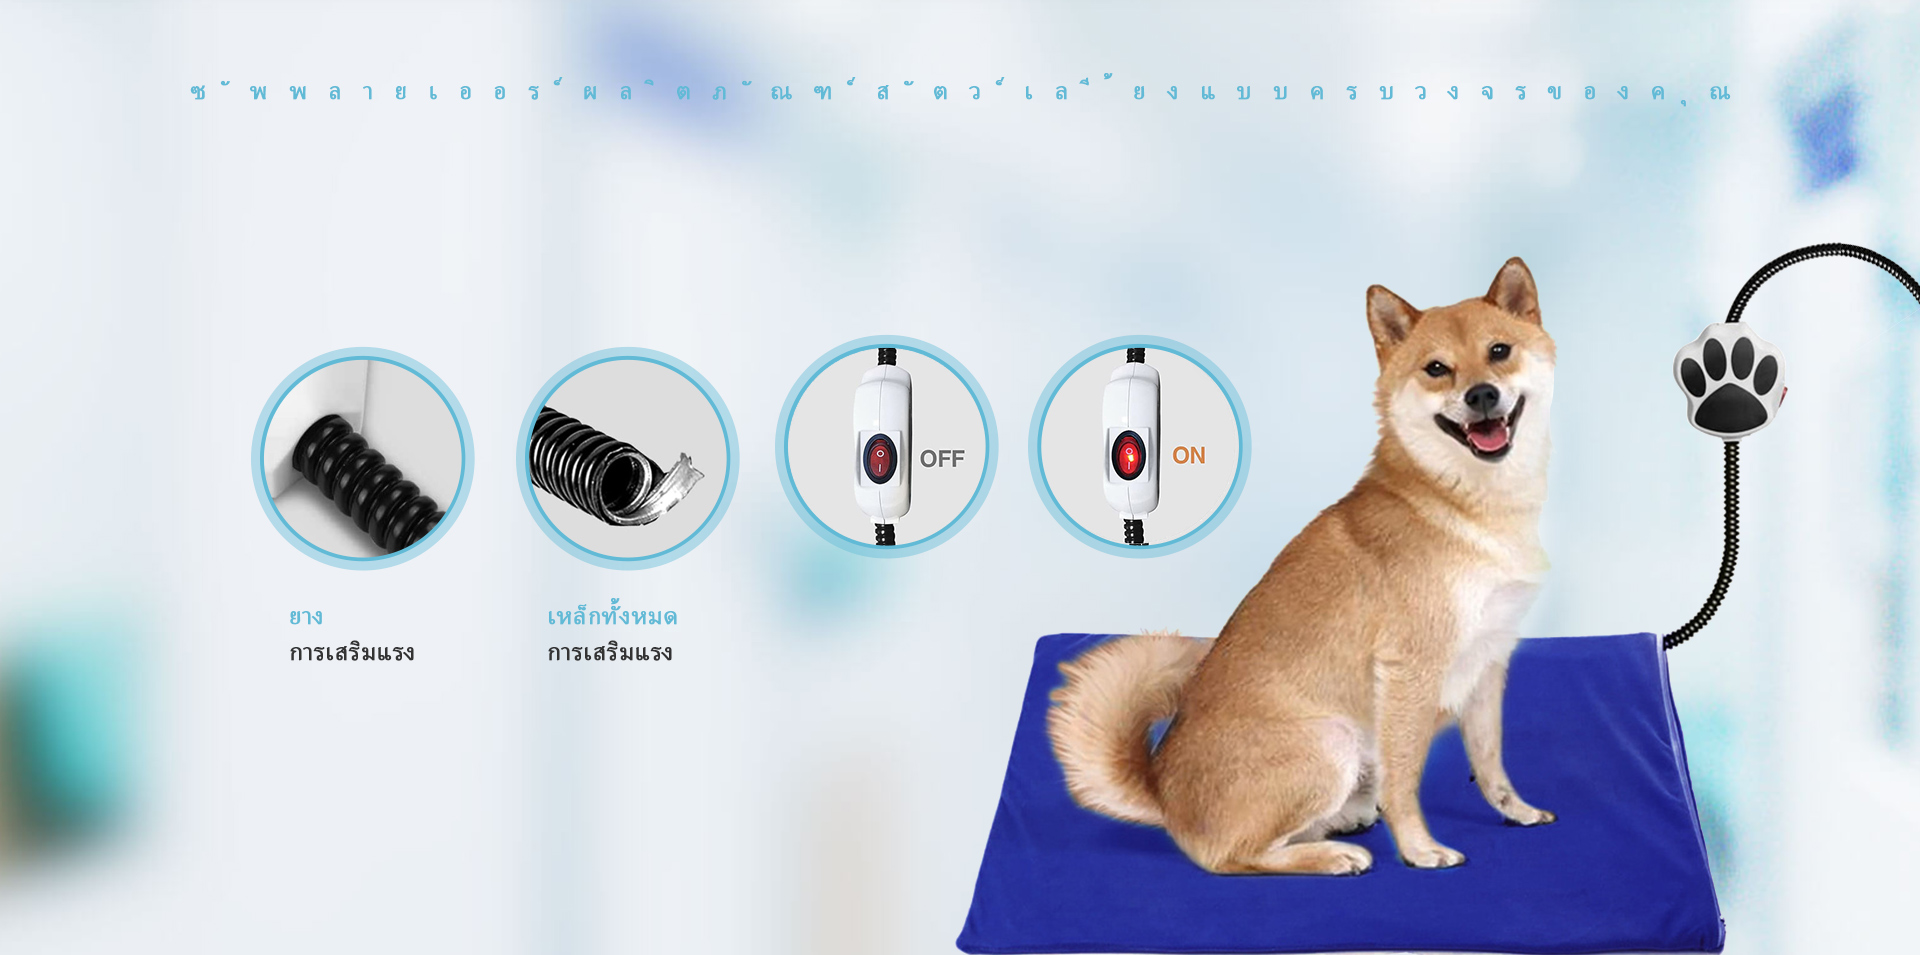 Max Pet Company’s Pet Accessories